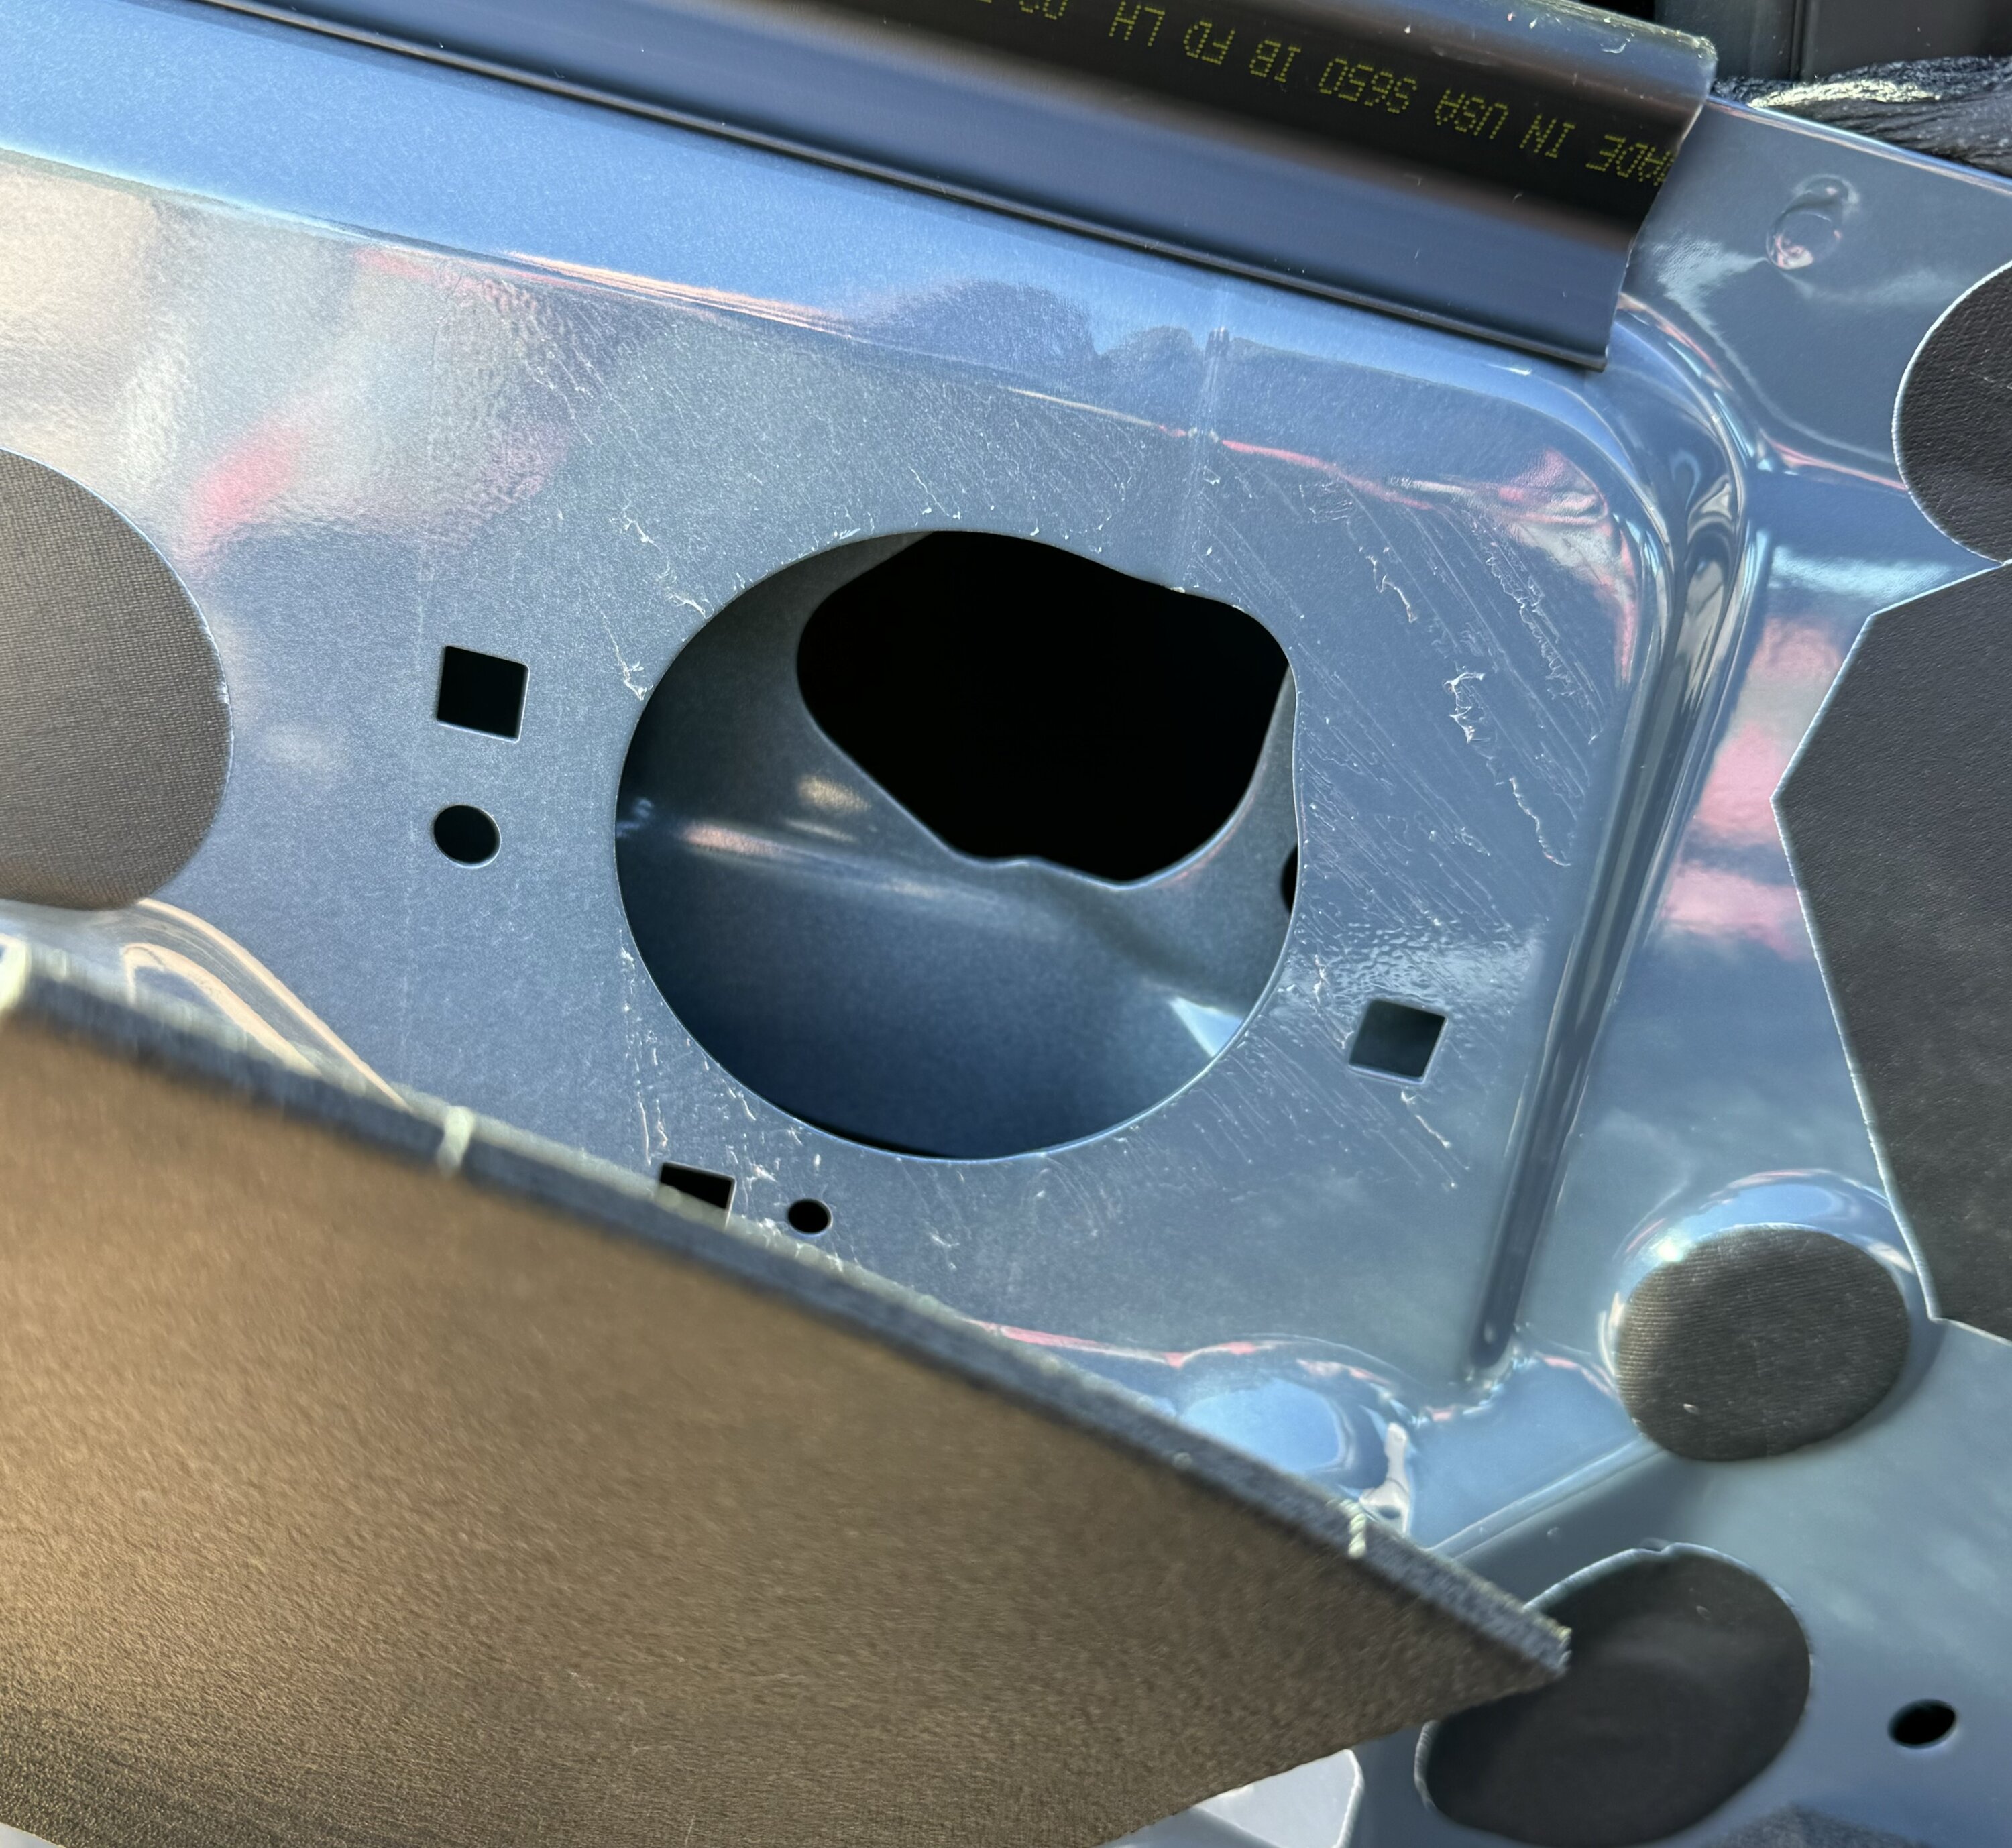 S650 Mustang Removed Door Panels for Speaker Upgrade - DIY Writeup IMG_0611